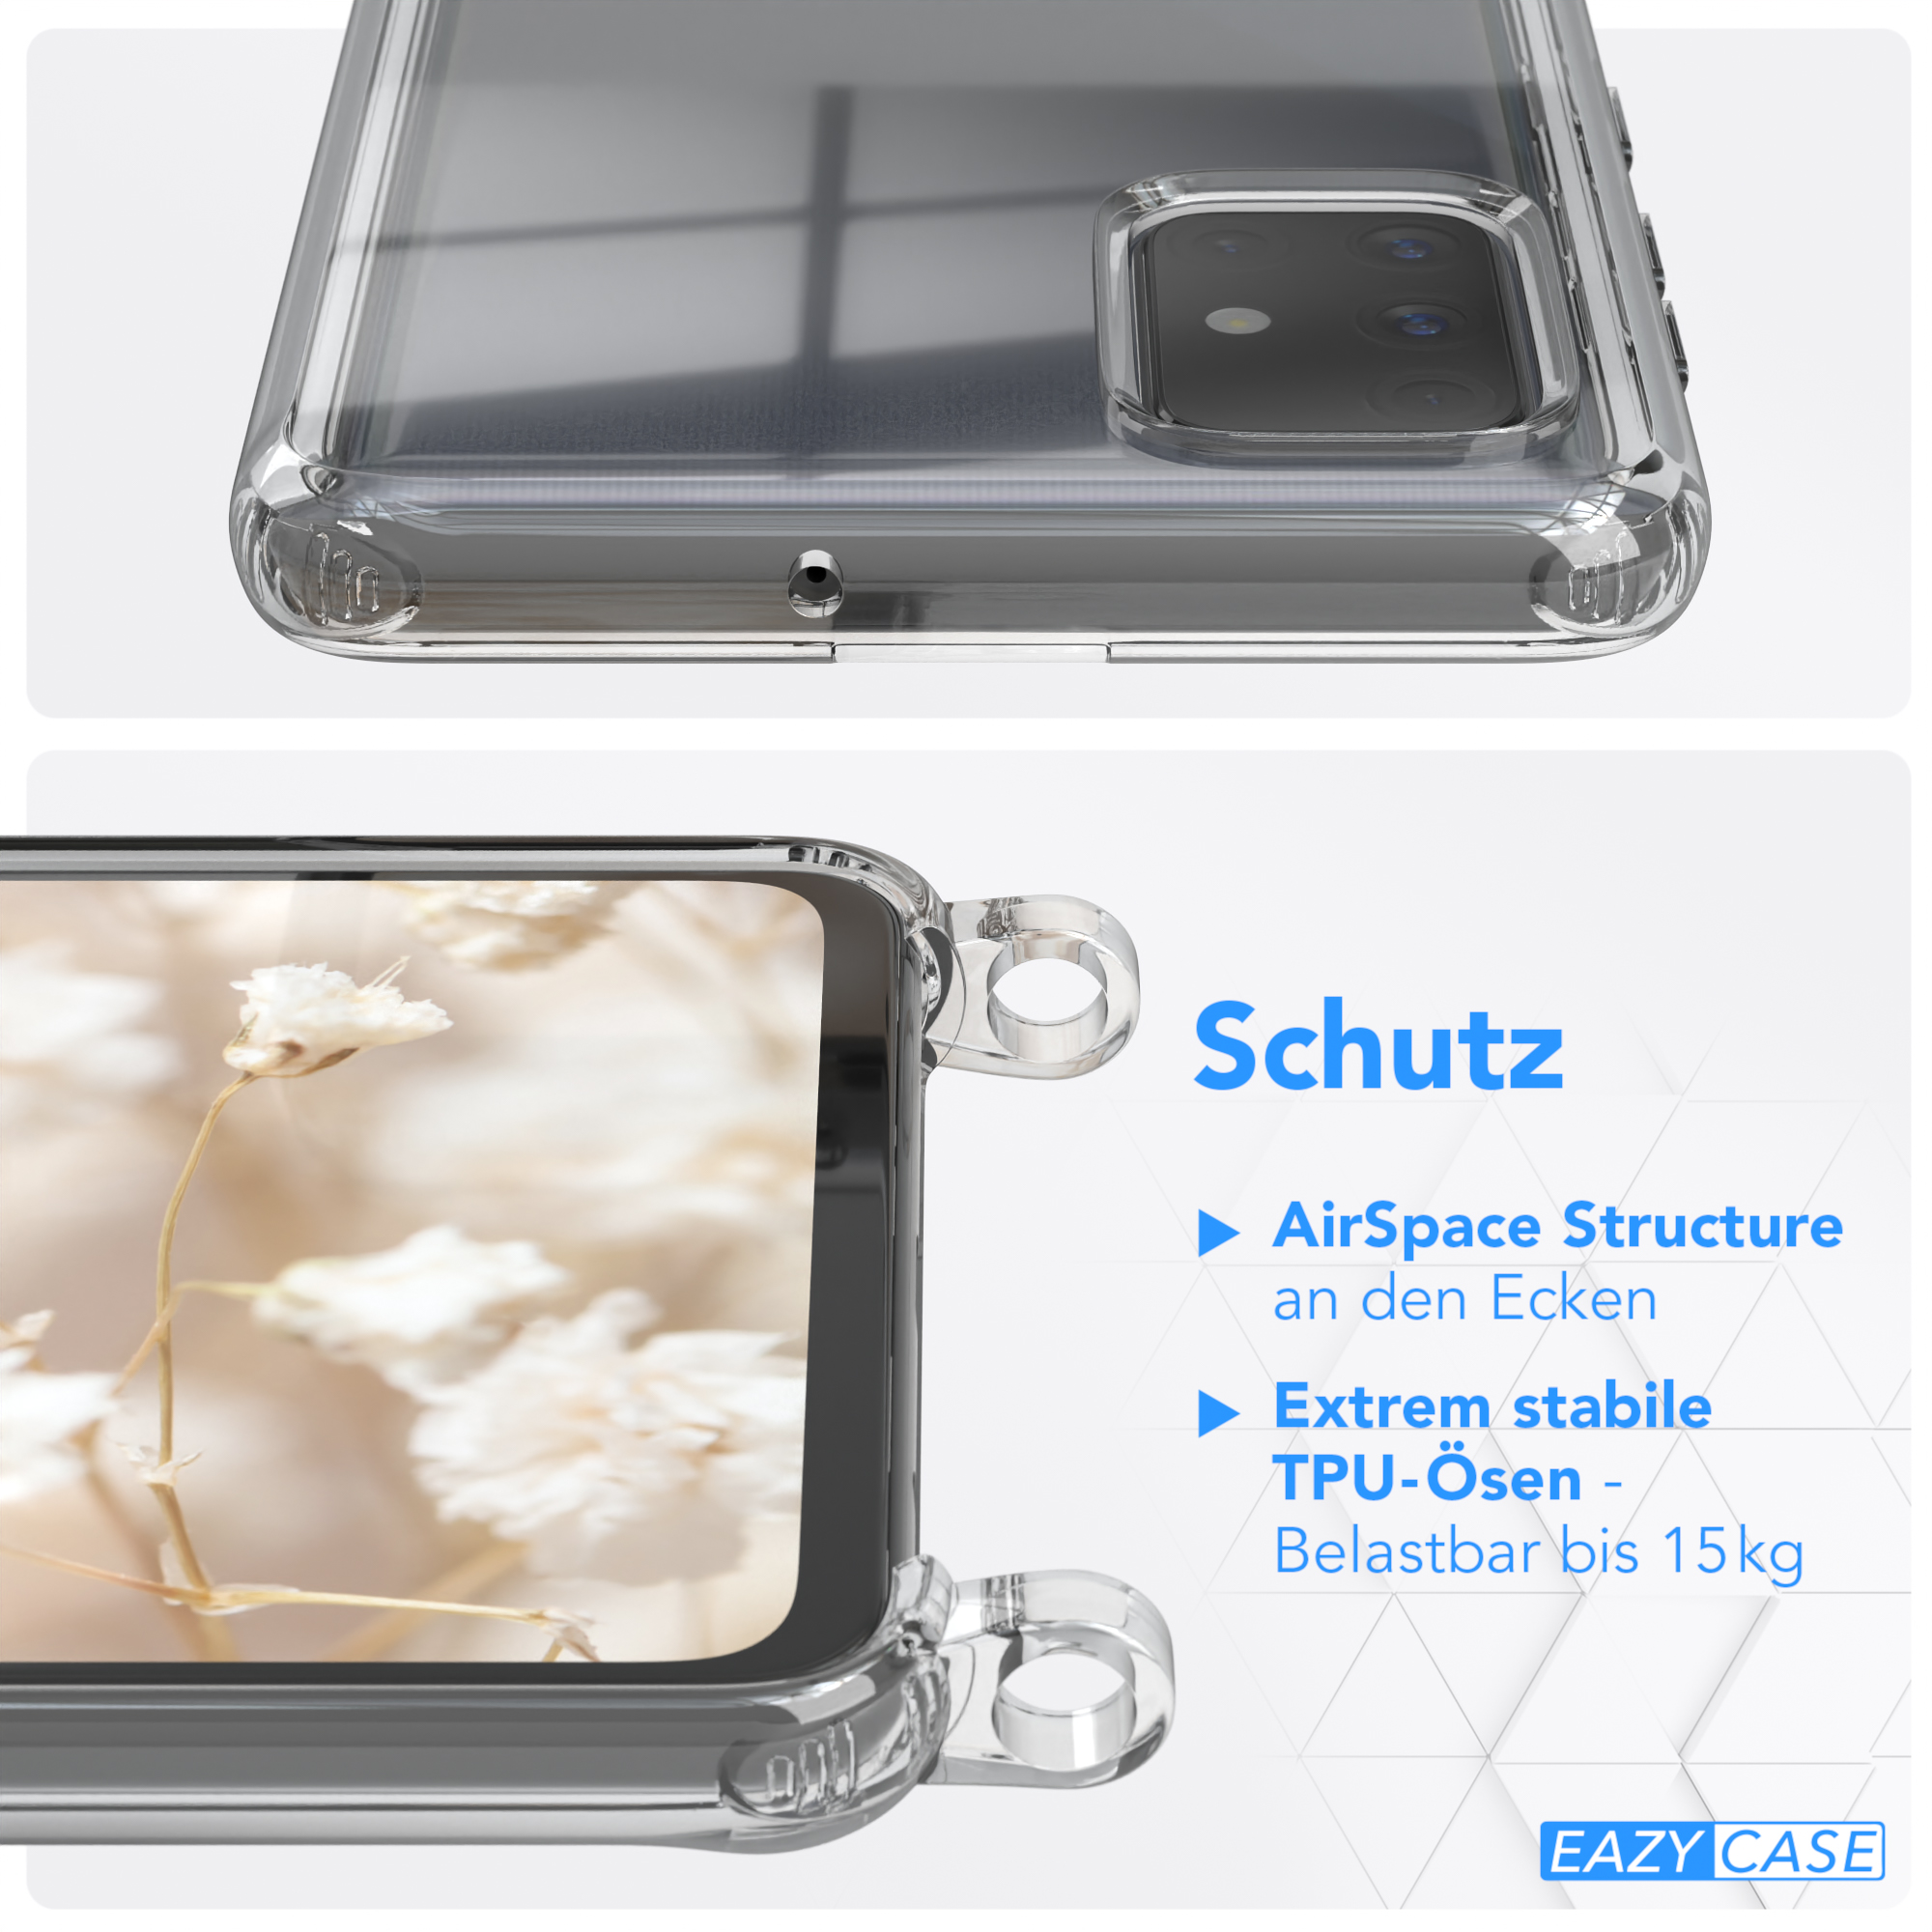 Umhängetasche, / Style, CASE Galaxy Handyhülle Samsung, EAZY mit A71, Kordel Blau Weiß Boho Transparente